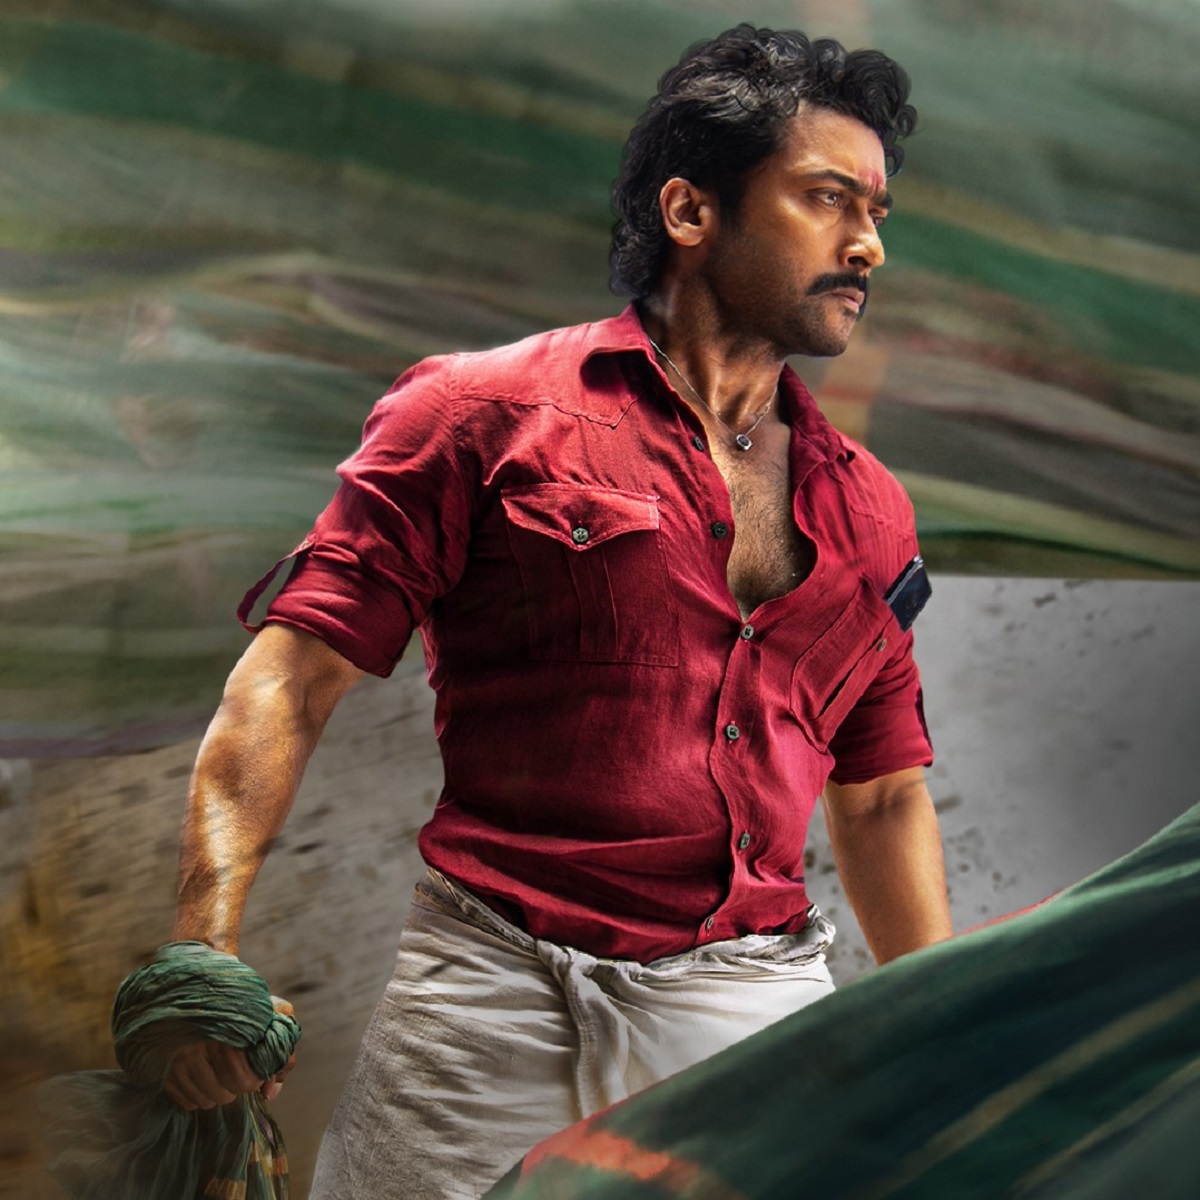 Box Office: Suriya starrer Etharkkum Thunindhavan has a Poor opening weekend